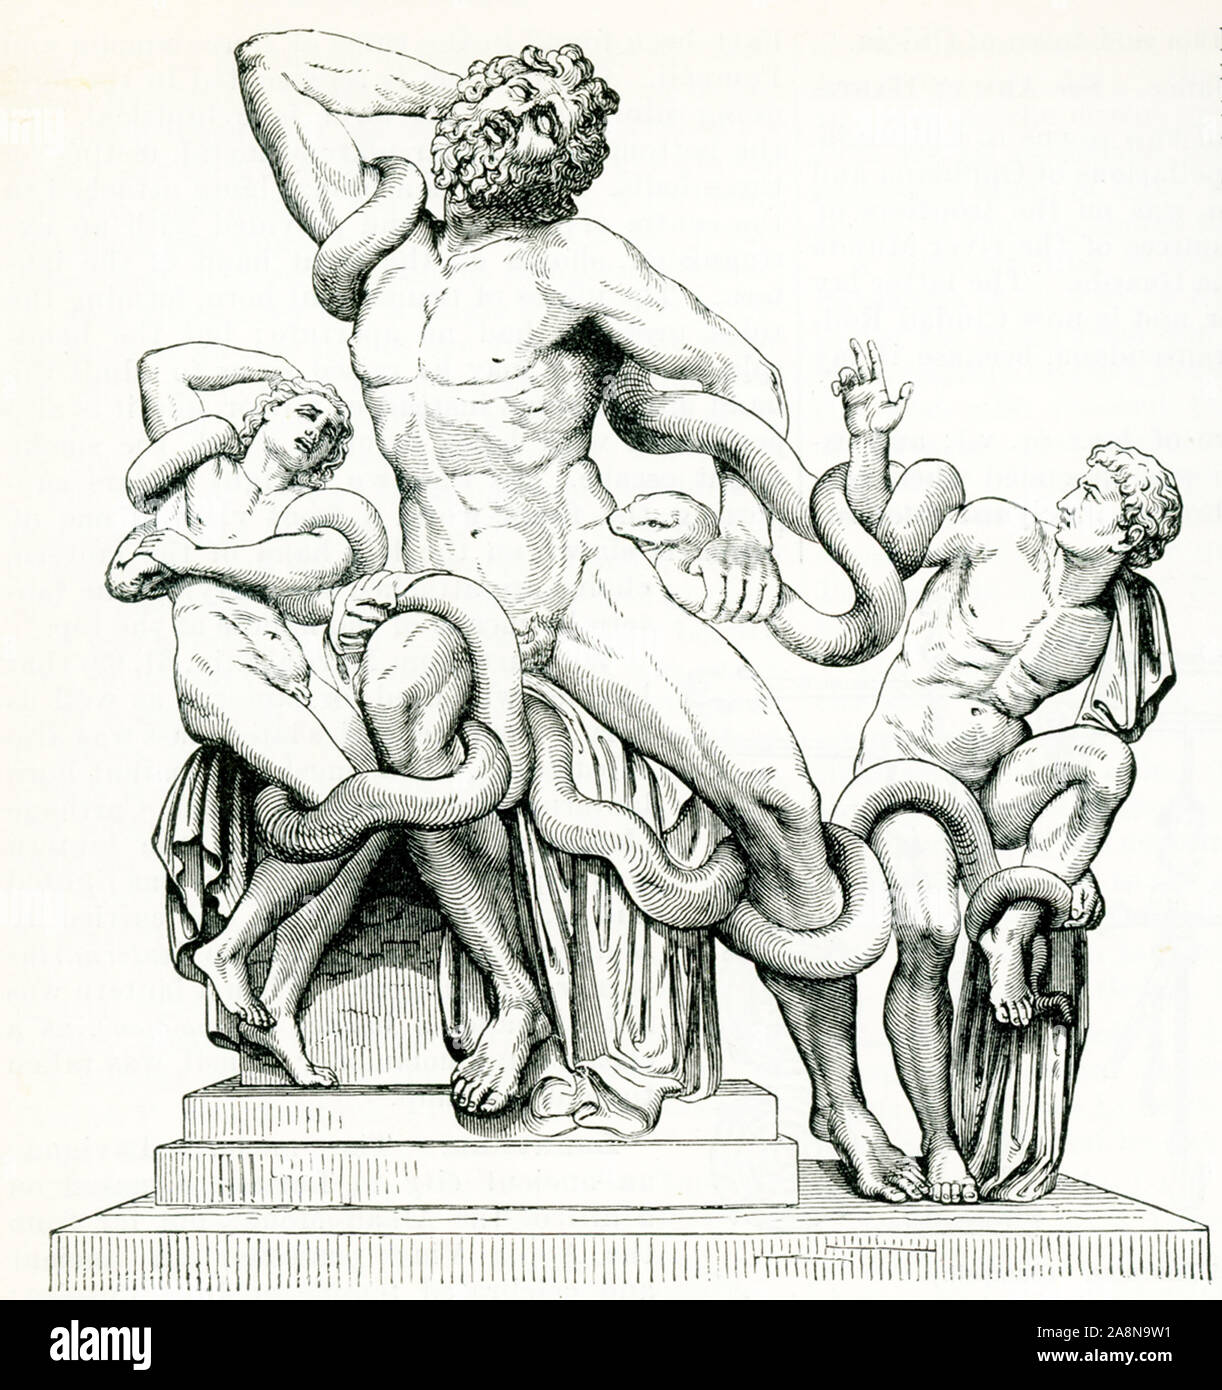 Cette image date de 1897 et est une copie d'une statue de Laocoon et ses fils. Selon la mythologie grecque, a averti le Laocoon sur l'importation de chevaux de Troie le cheval de bois façonné par les Grecs dans Troie. Calme à ses protestations, un dieu qui a favorisé les grecs (certains disent qu'Athéna, Poséidon, d'autres d'autres Zeus) envoyé à serpents de mer de le tuer - et avec lui, son fils. Banque D'Images